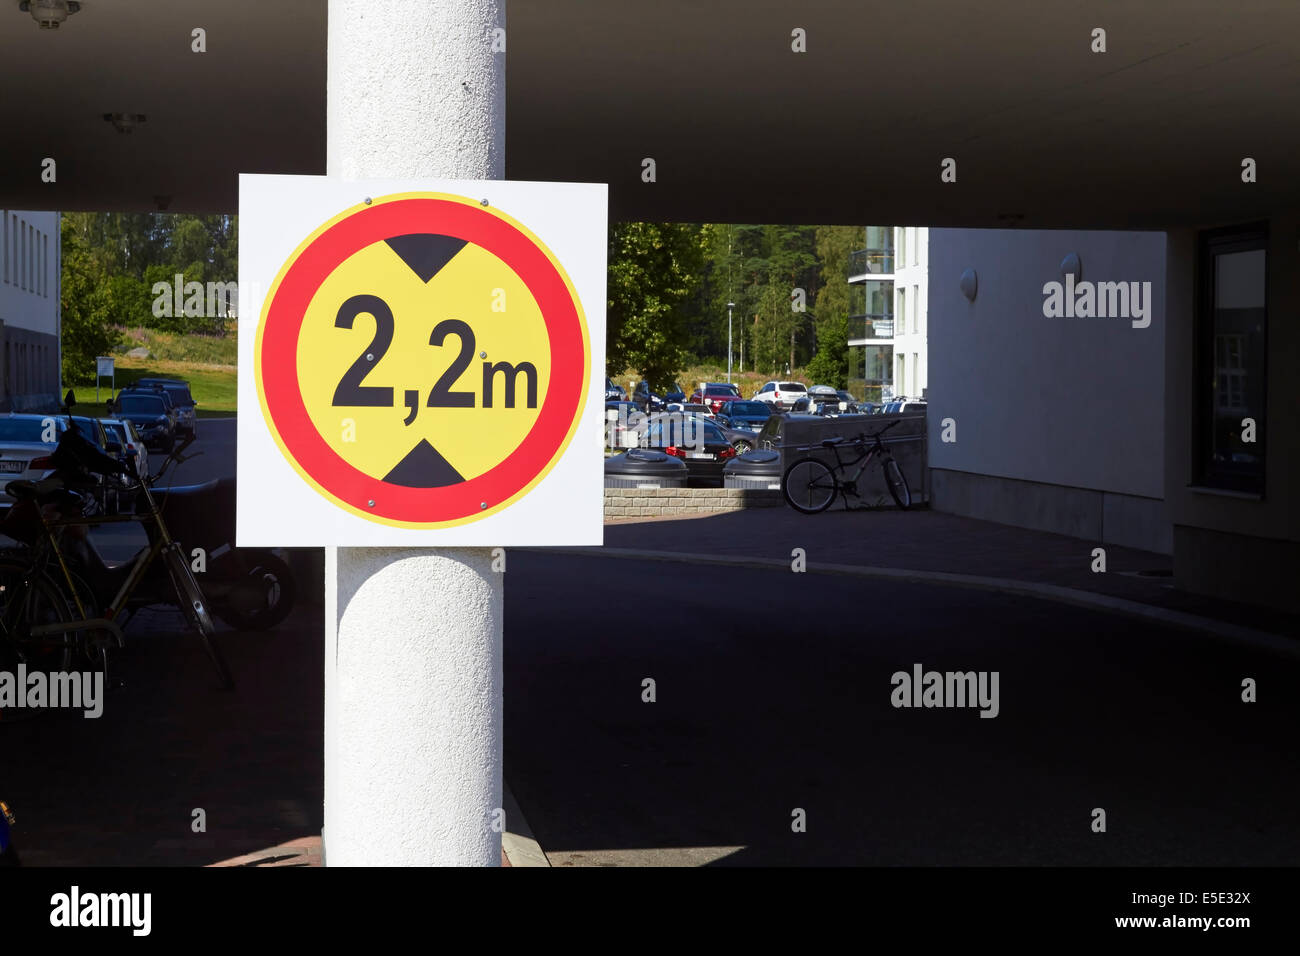 Kein Eintrag für Fahrzeuge mit einer Gesamthöhe von mehr als 2,2 m, Finnland Stockfoto